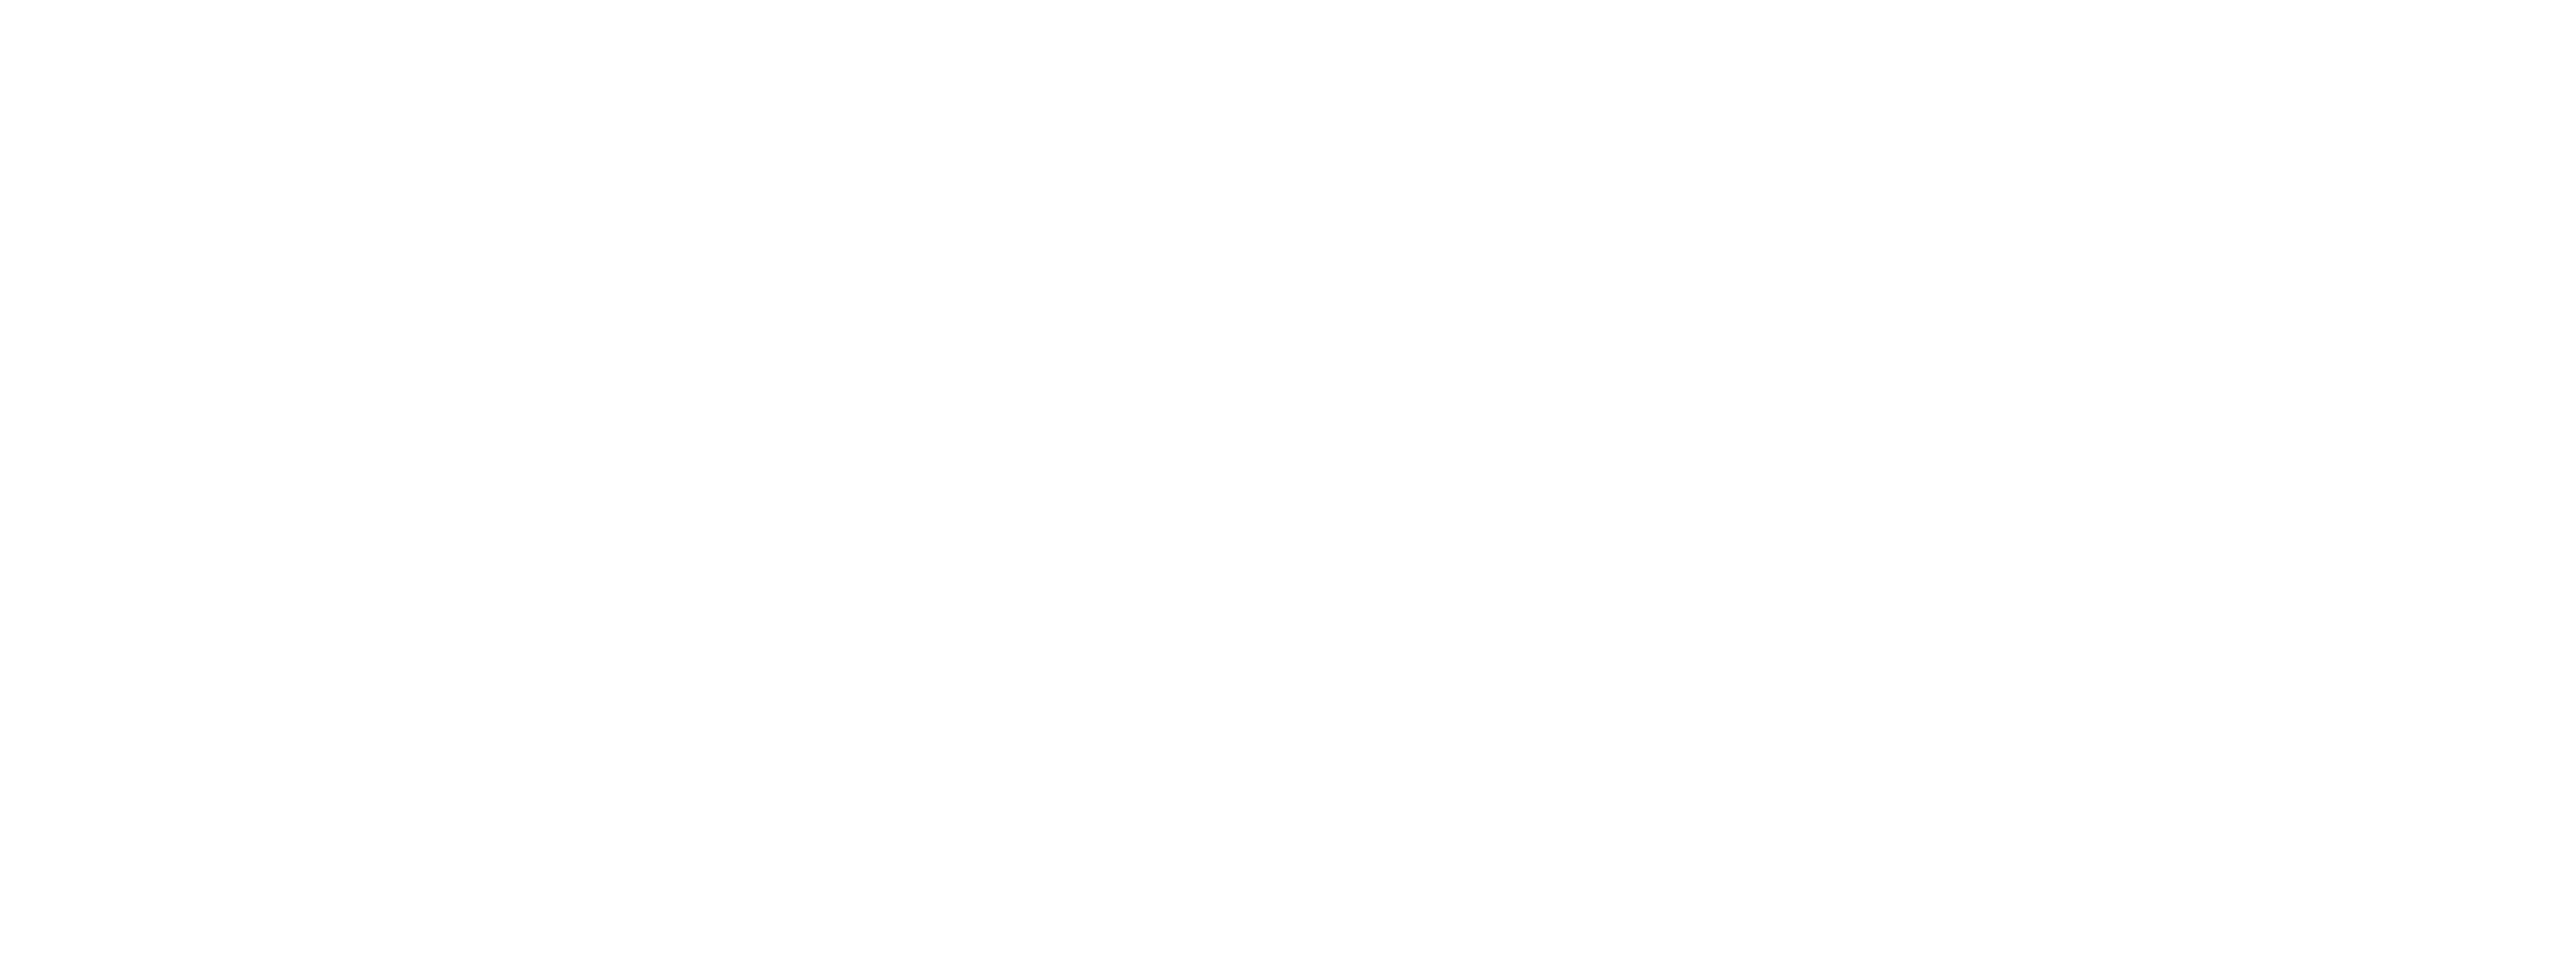 System Operadora de Viajes